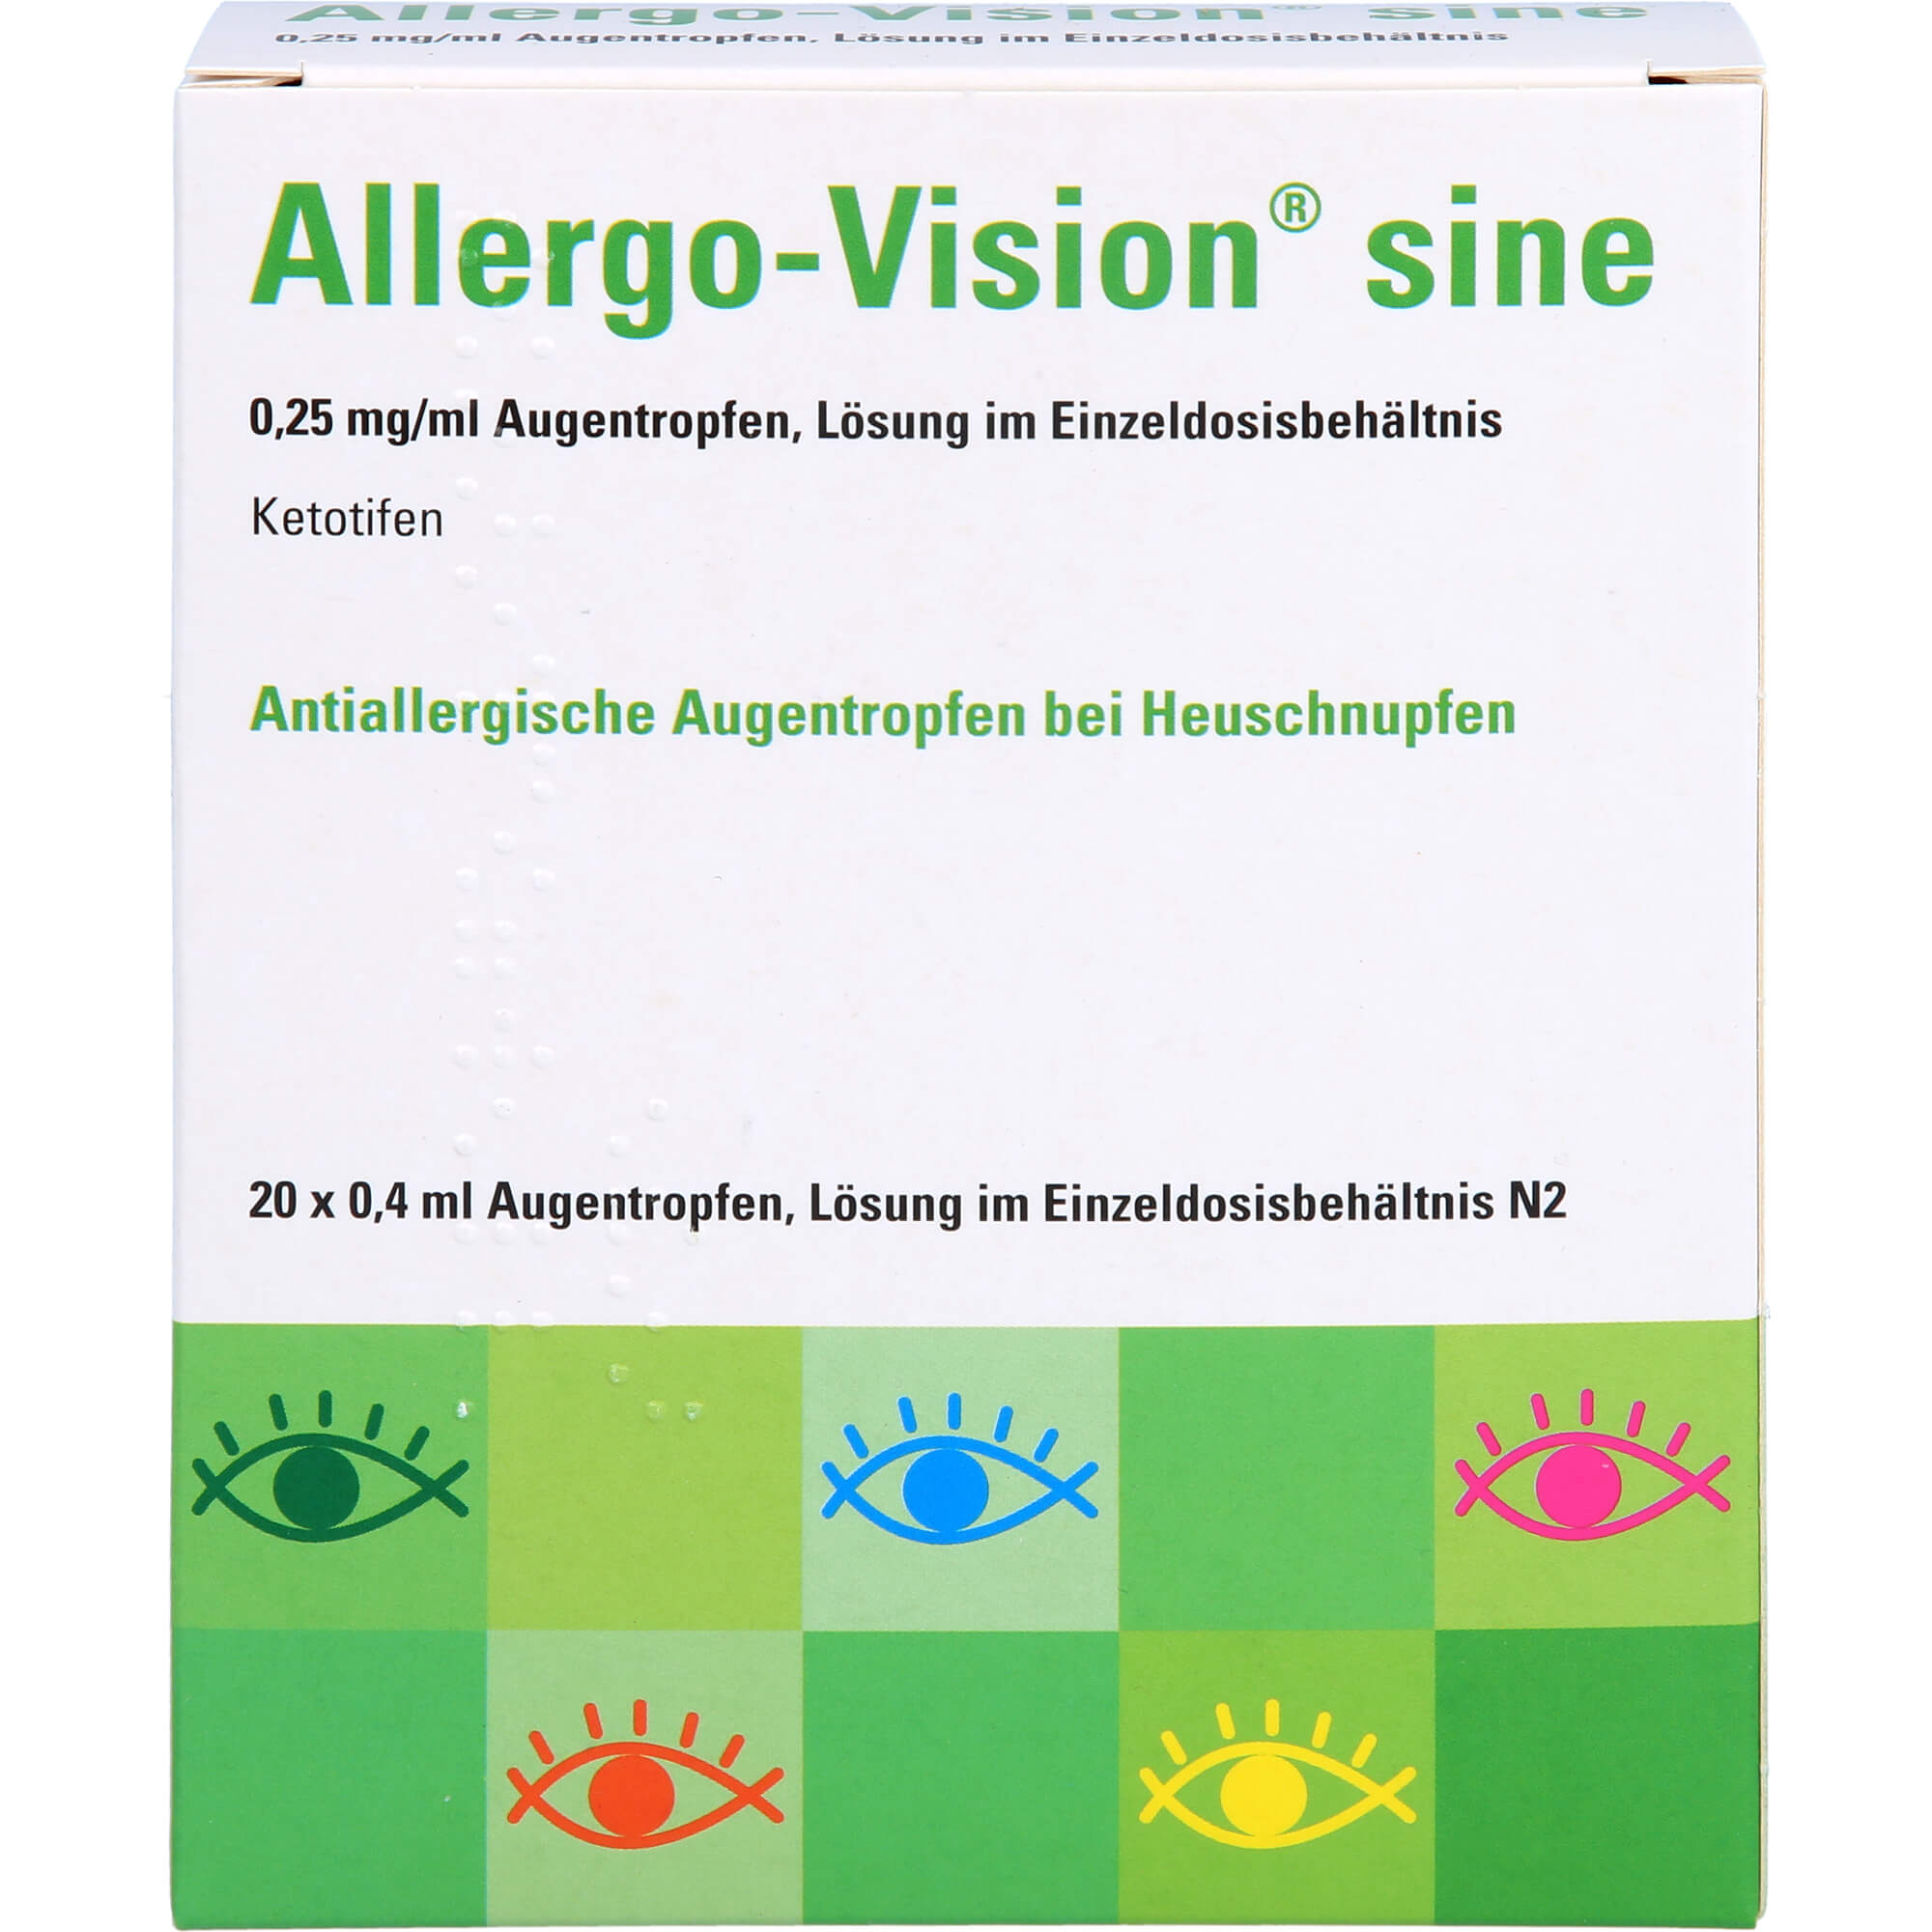 ALLERGO-VISION sine 0,25 mg/ml AT in Einzeldosen